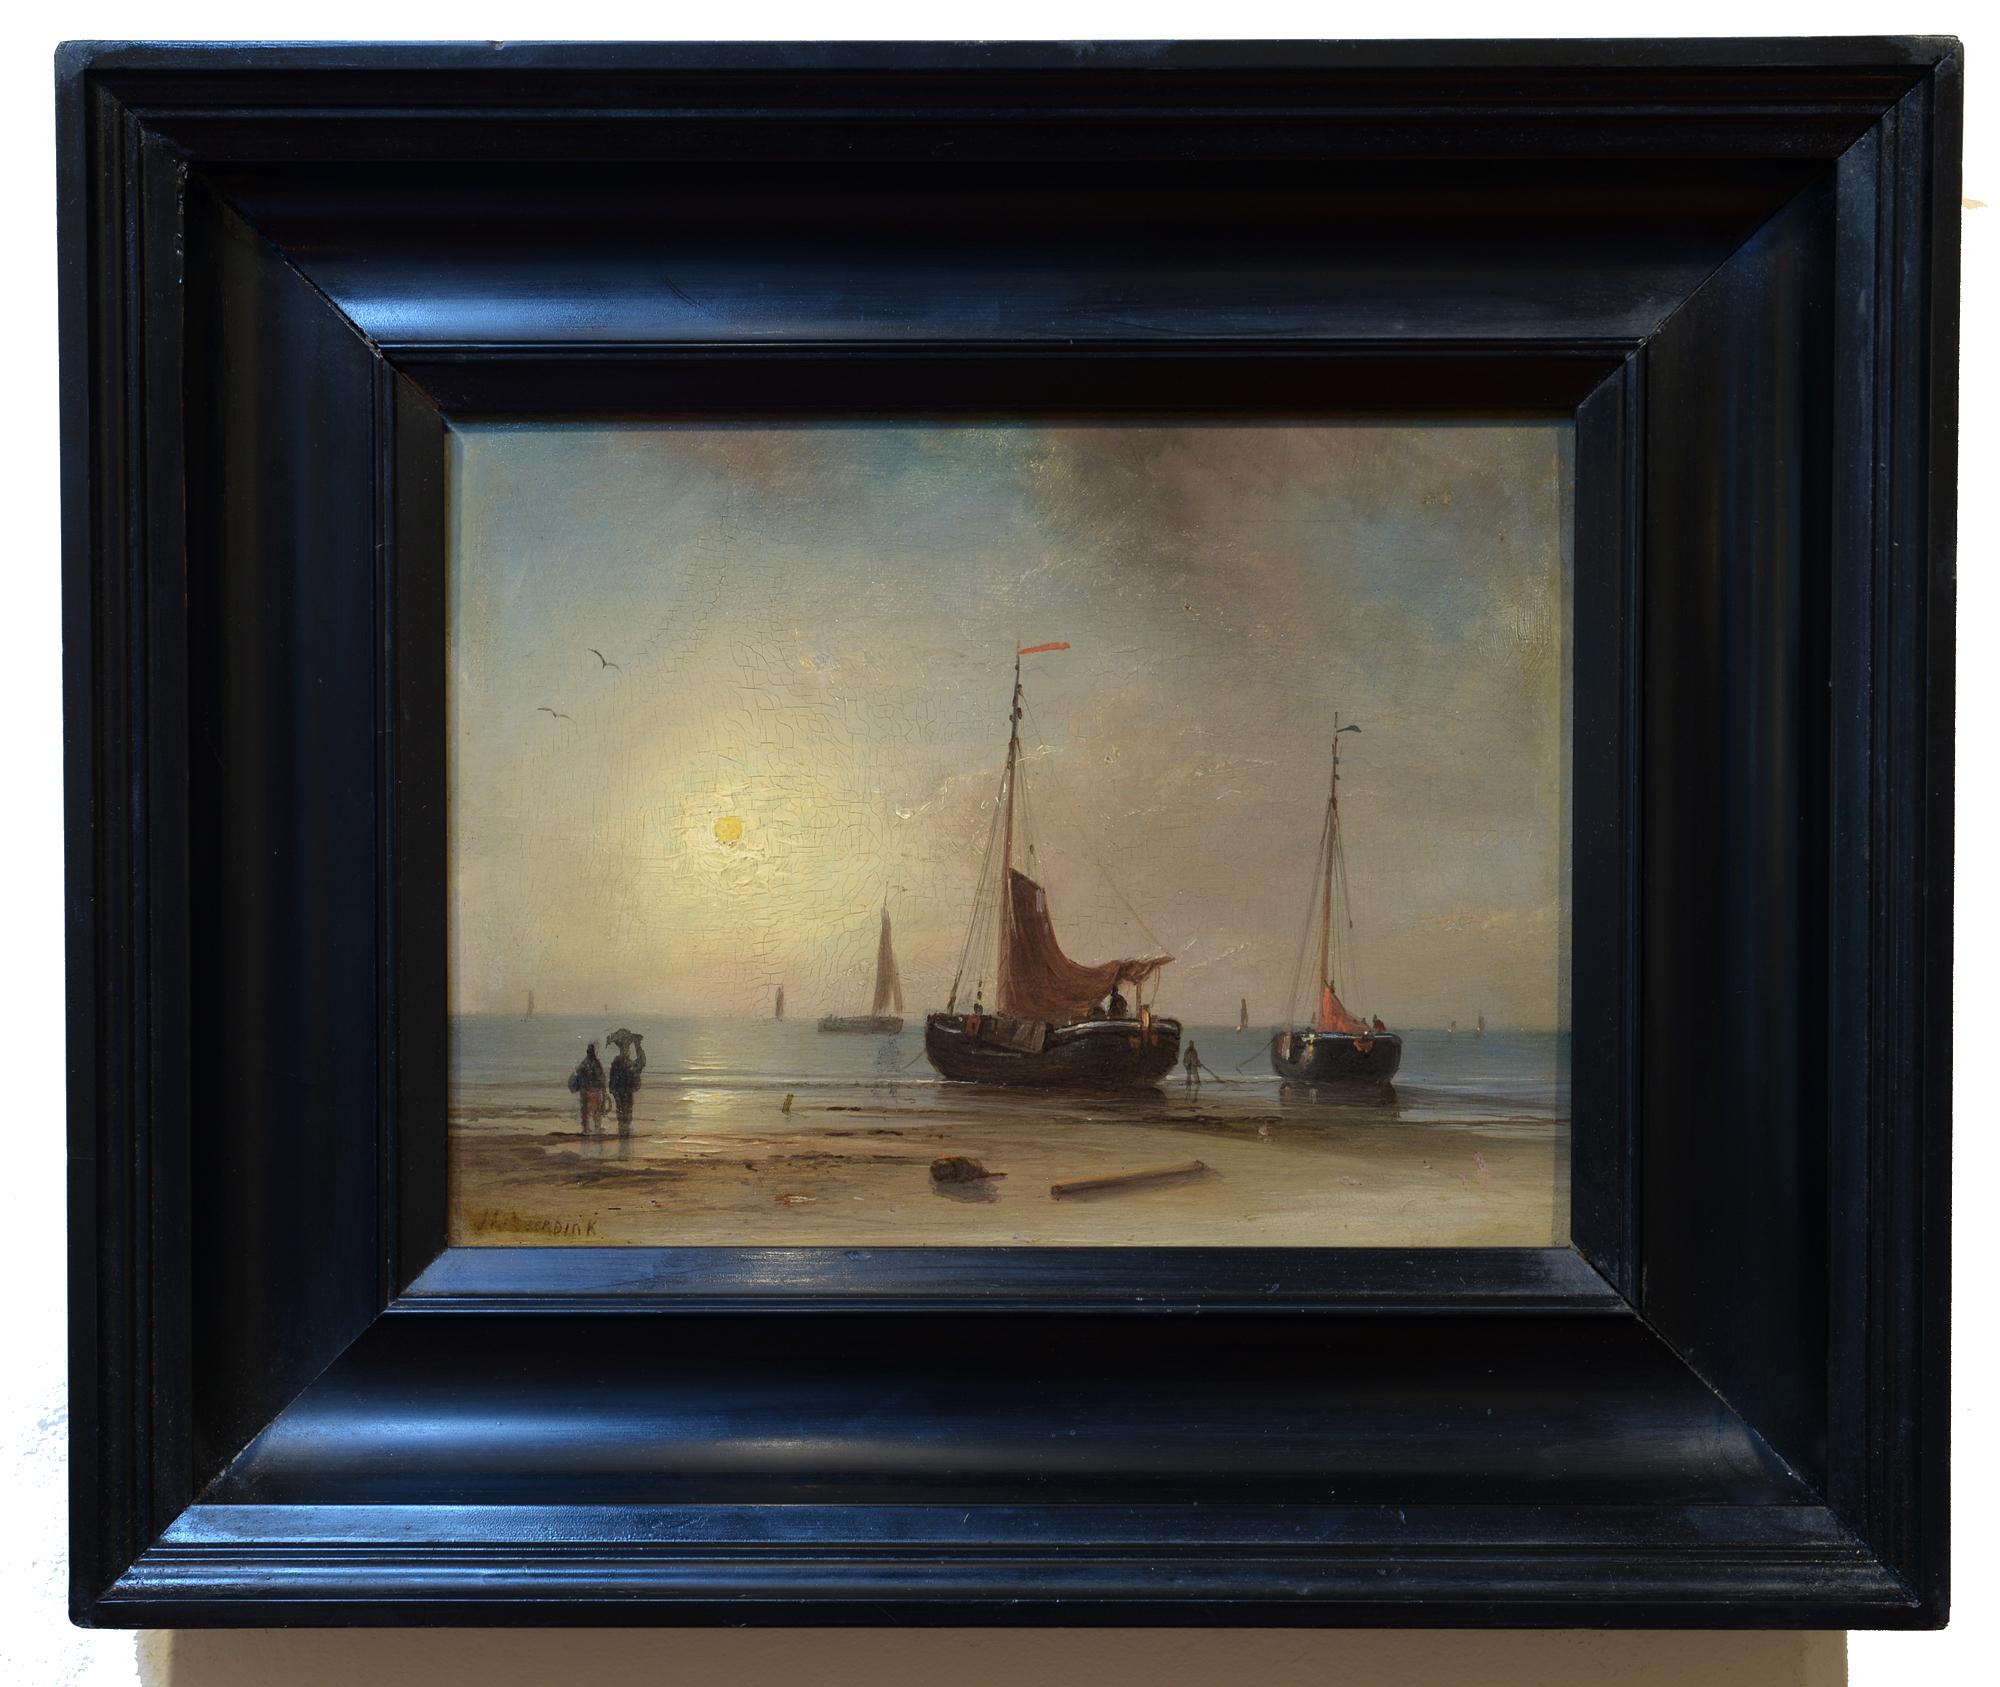 Day's End, Dutch, Romantic School, Luminous Harbor Scene - Painting by Johannes Hilverdink